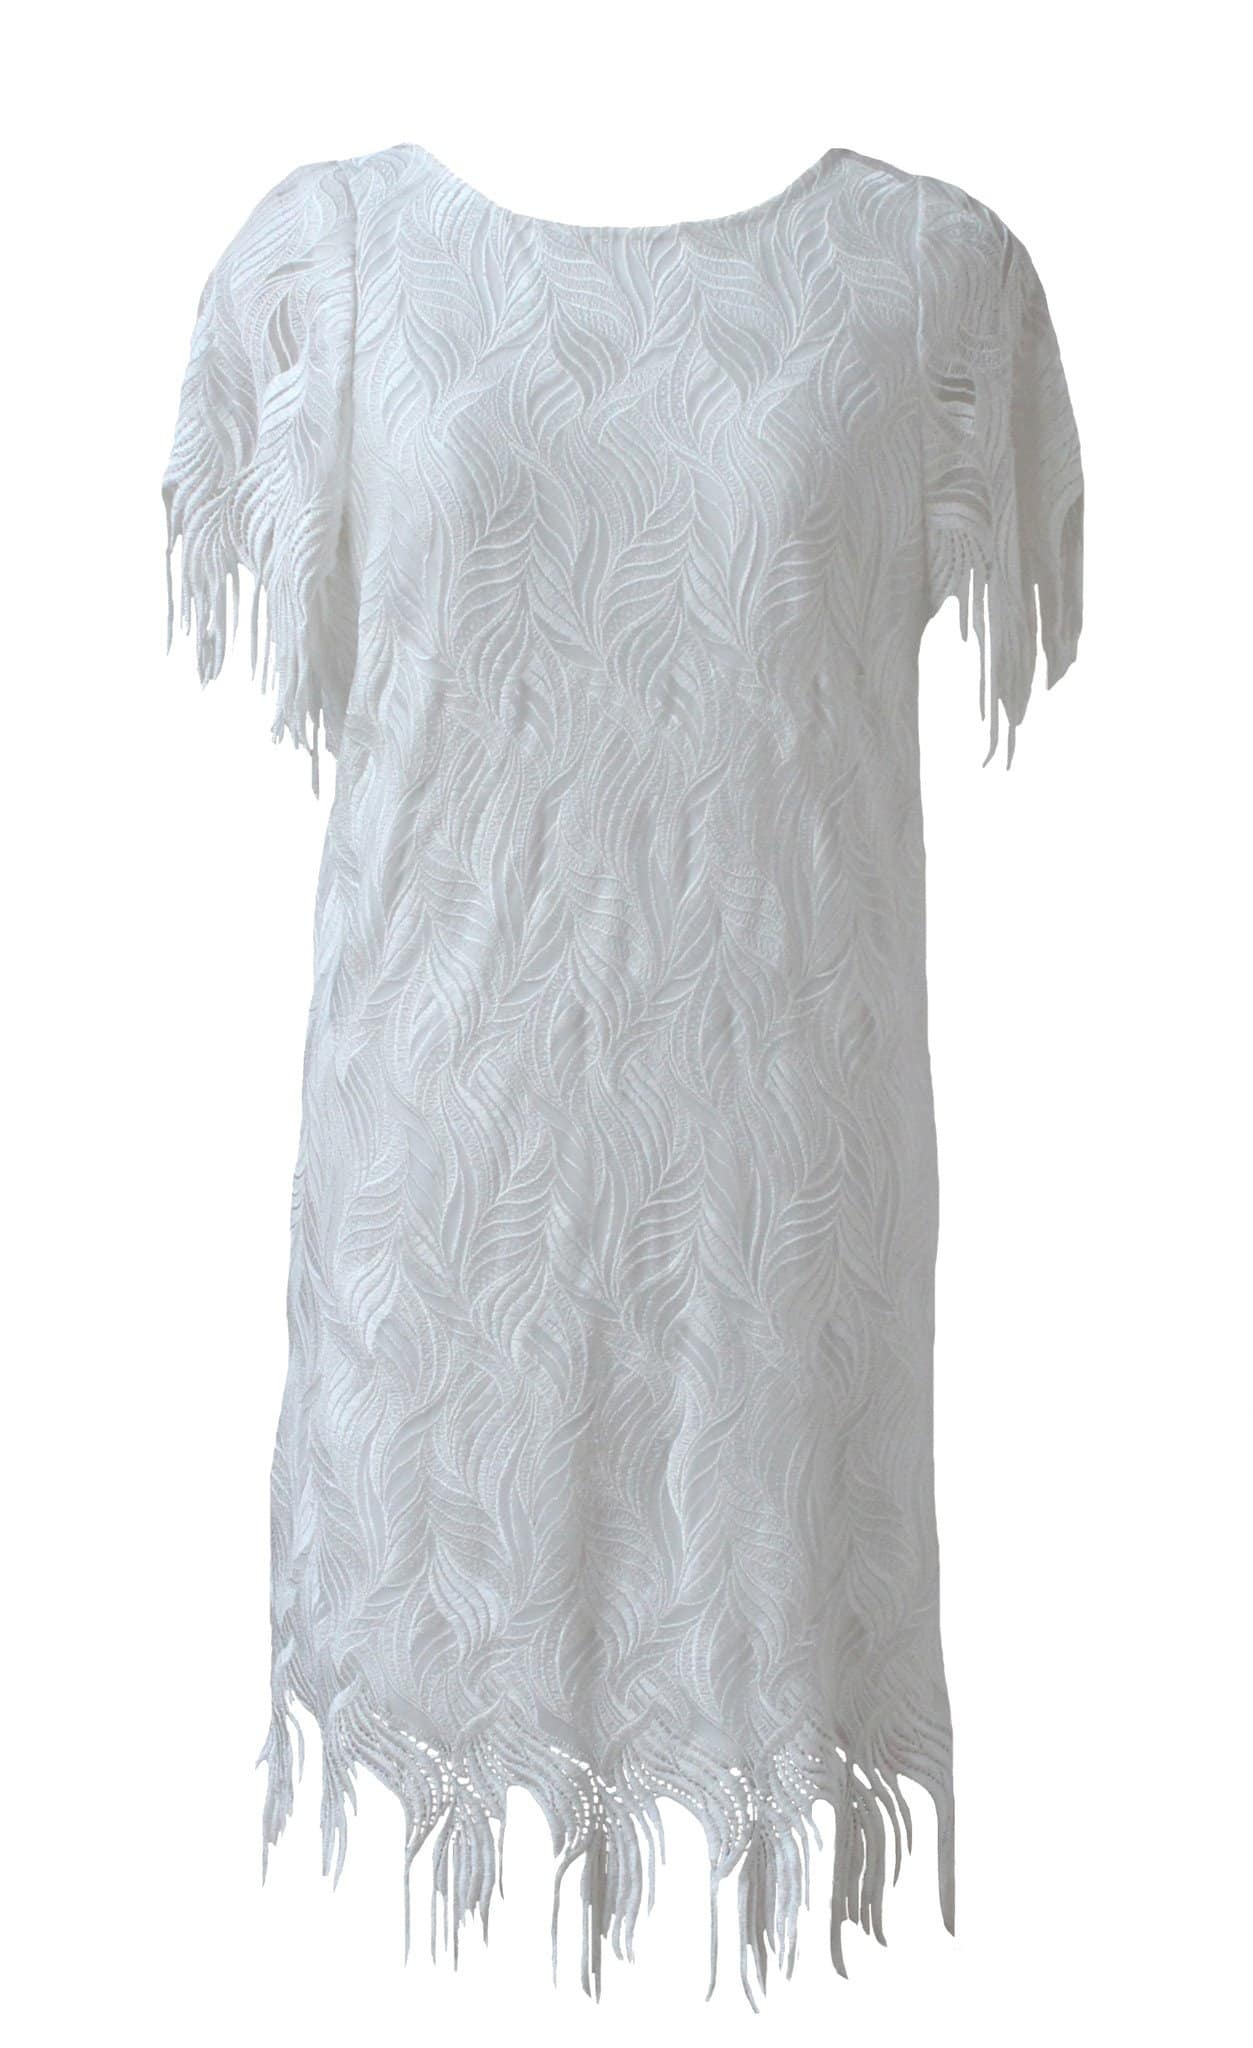 Style: PENELOPE Deco Embroidery Fringe Dress Peony Rice